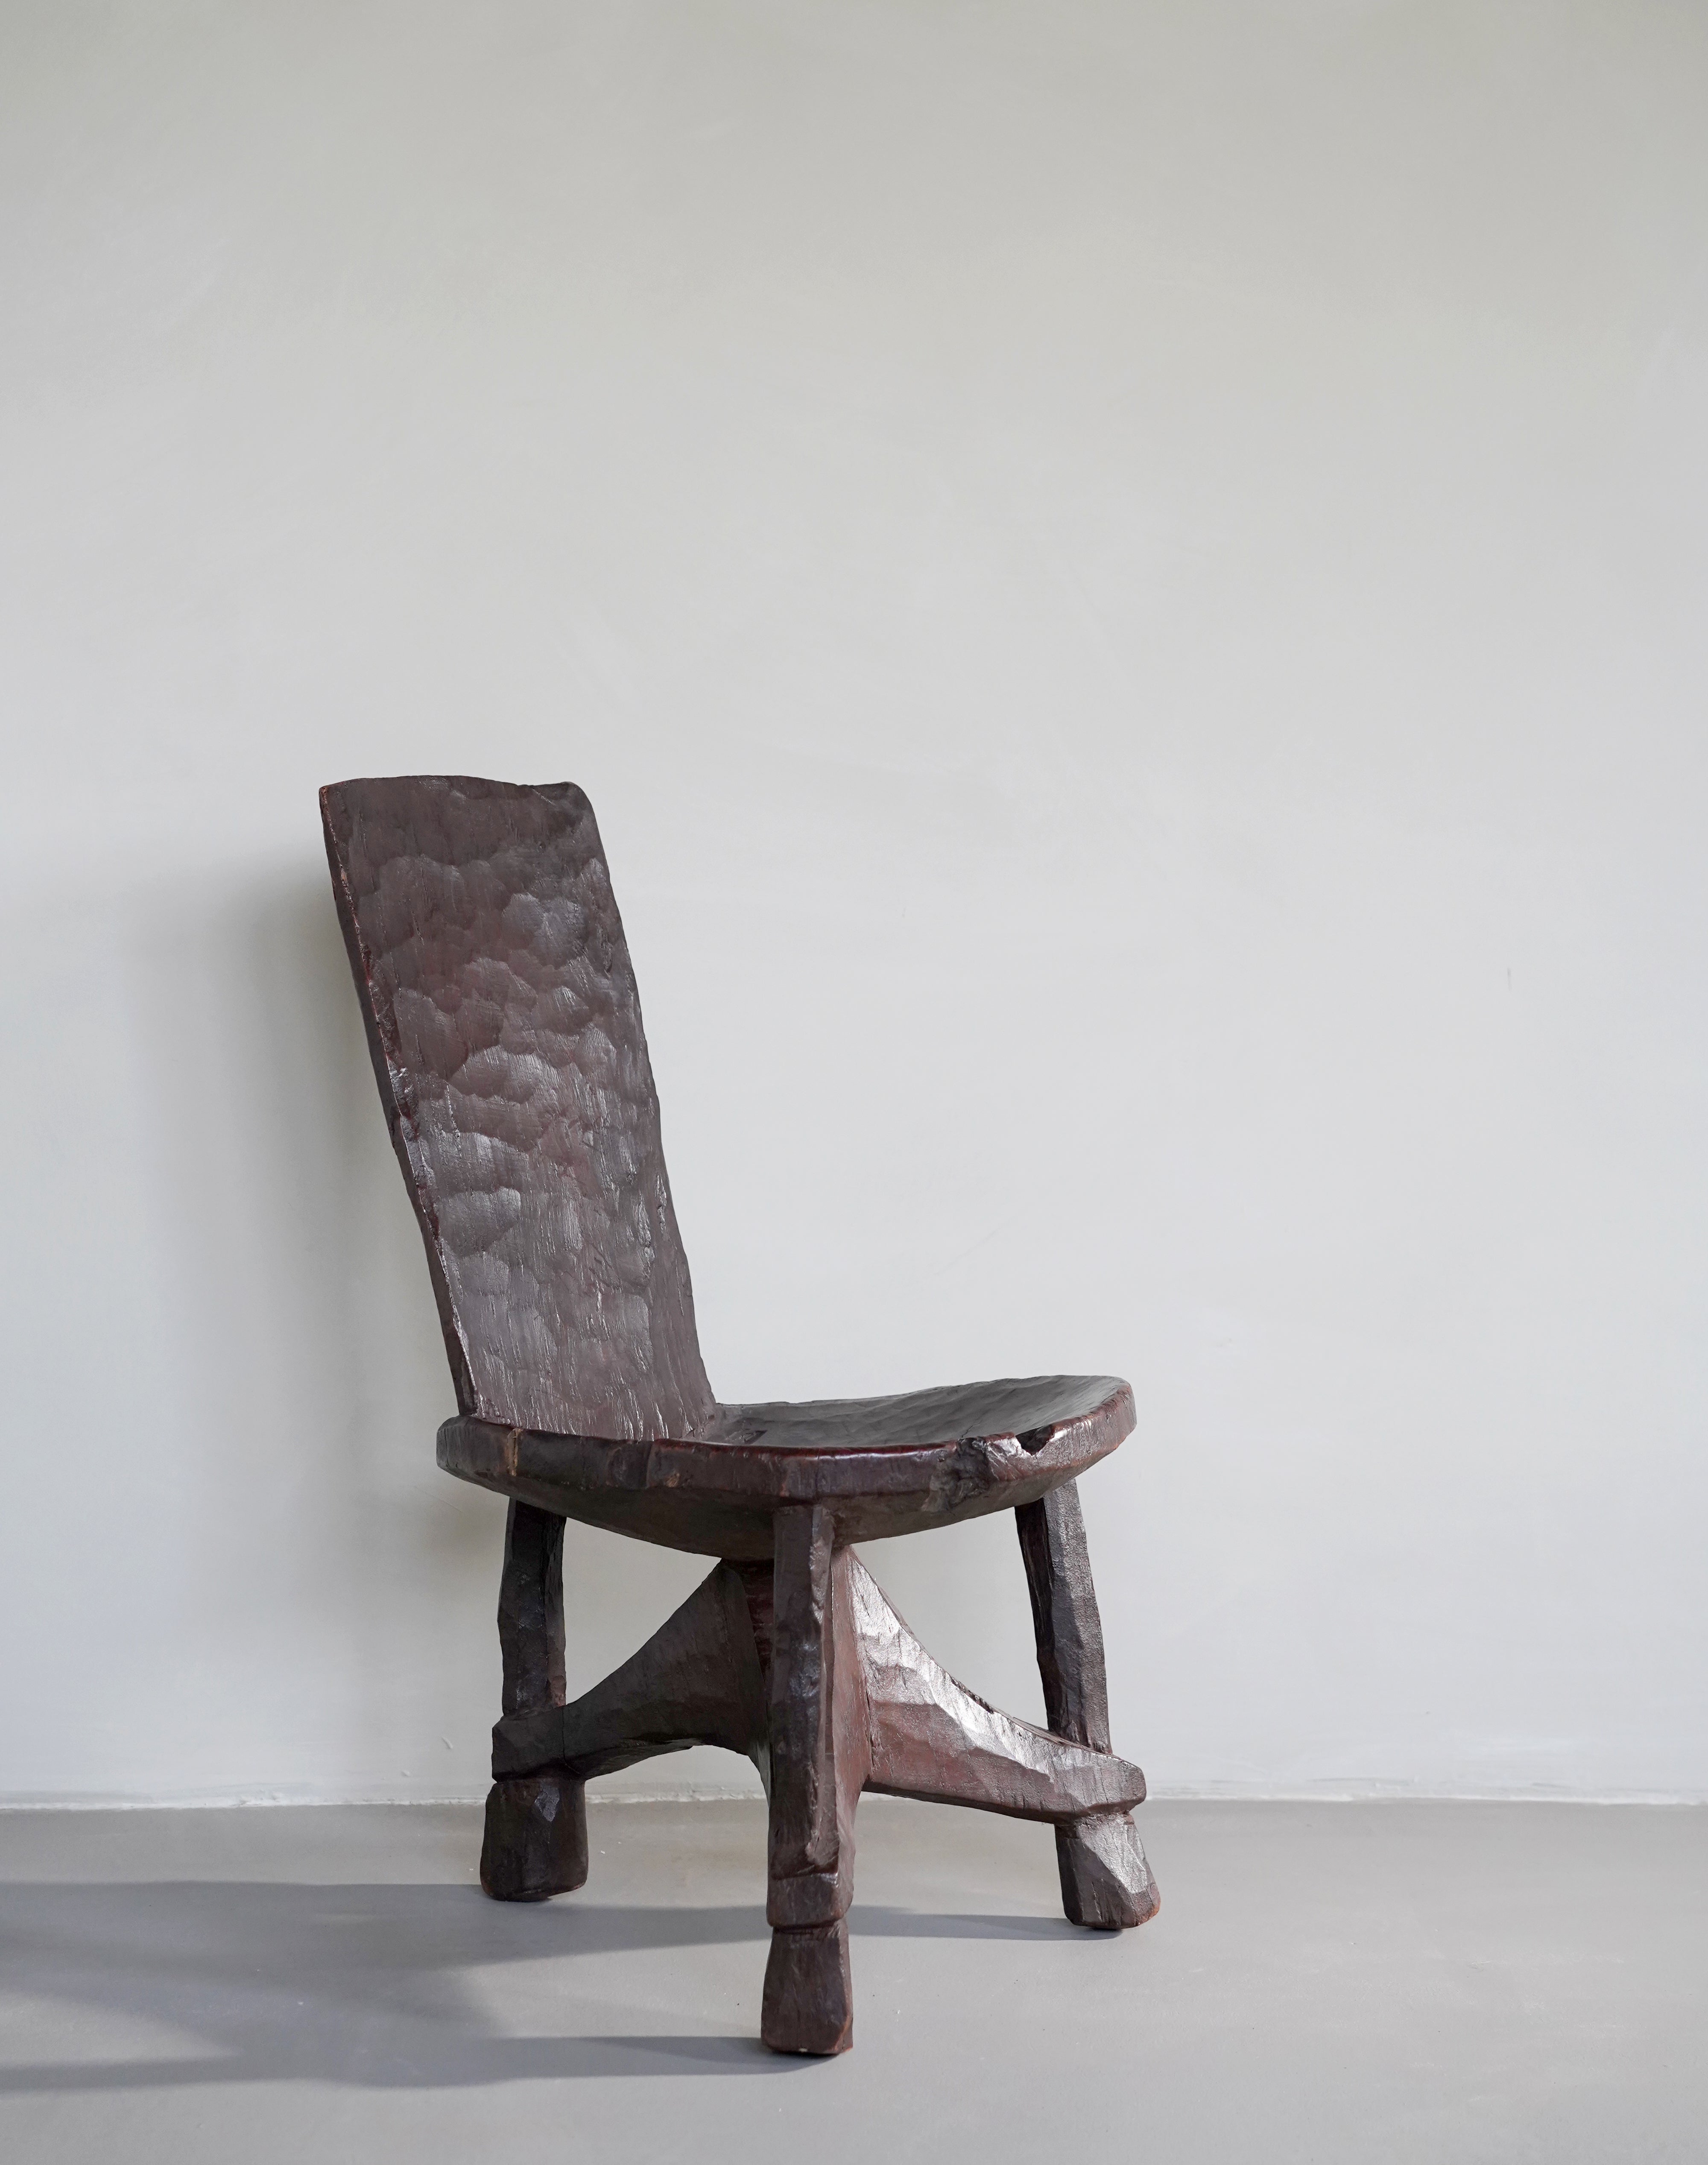 Ethiopian Chair